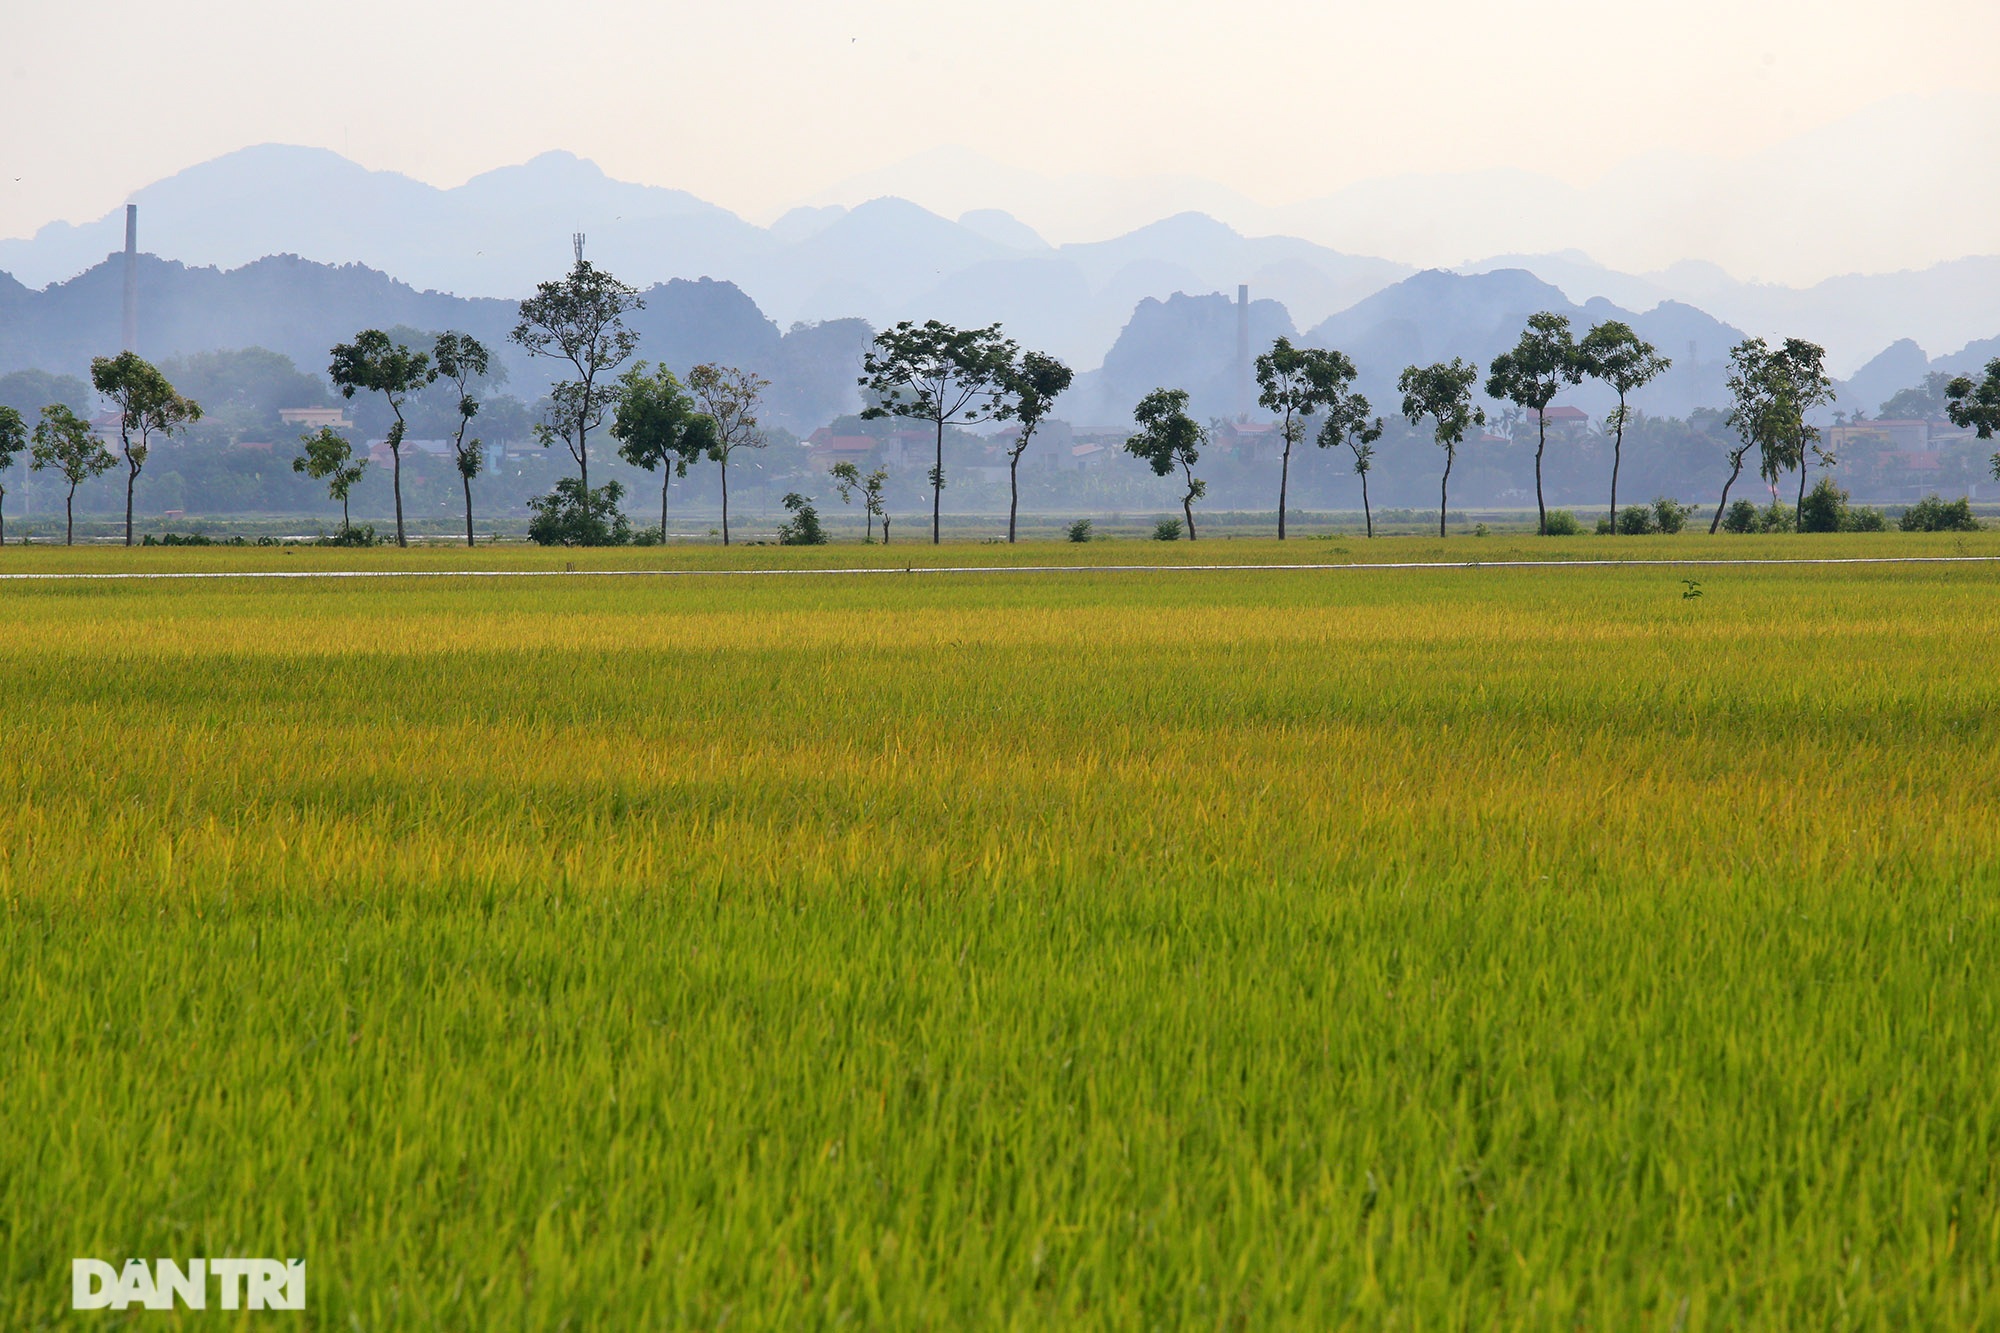 Vùng ngoại ô: Những vùng ngoại ô của Việt Nam mang đến cho bạn một cảm giác thư giãn và bình yên. Cùng chiêm ngưỡng những phong cảnh tuyệt đẹp, những ngôi làng xinh đẹp với nét đẹp riêng của mỗi vùng.